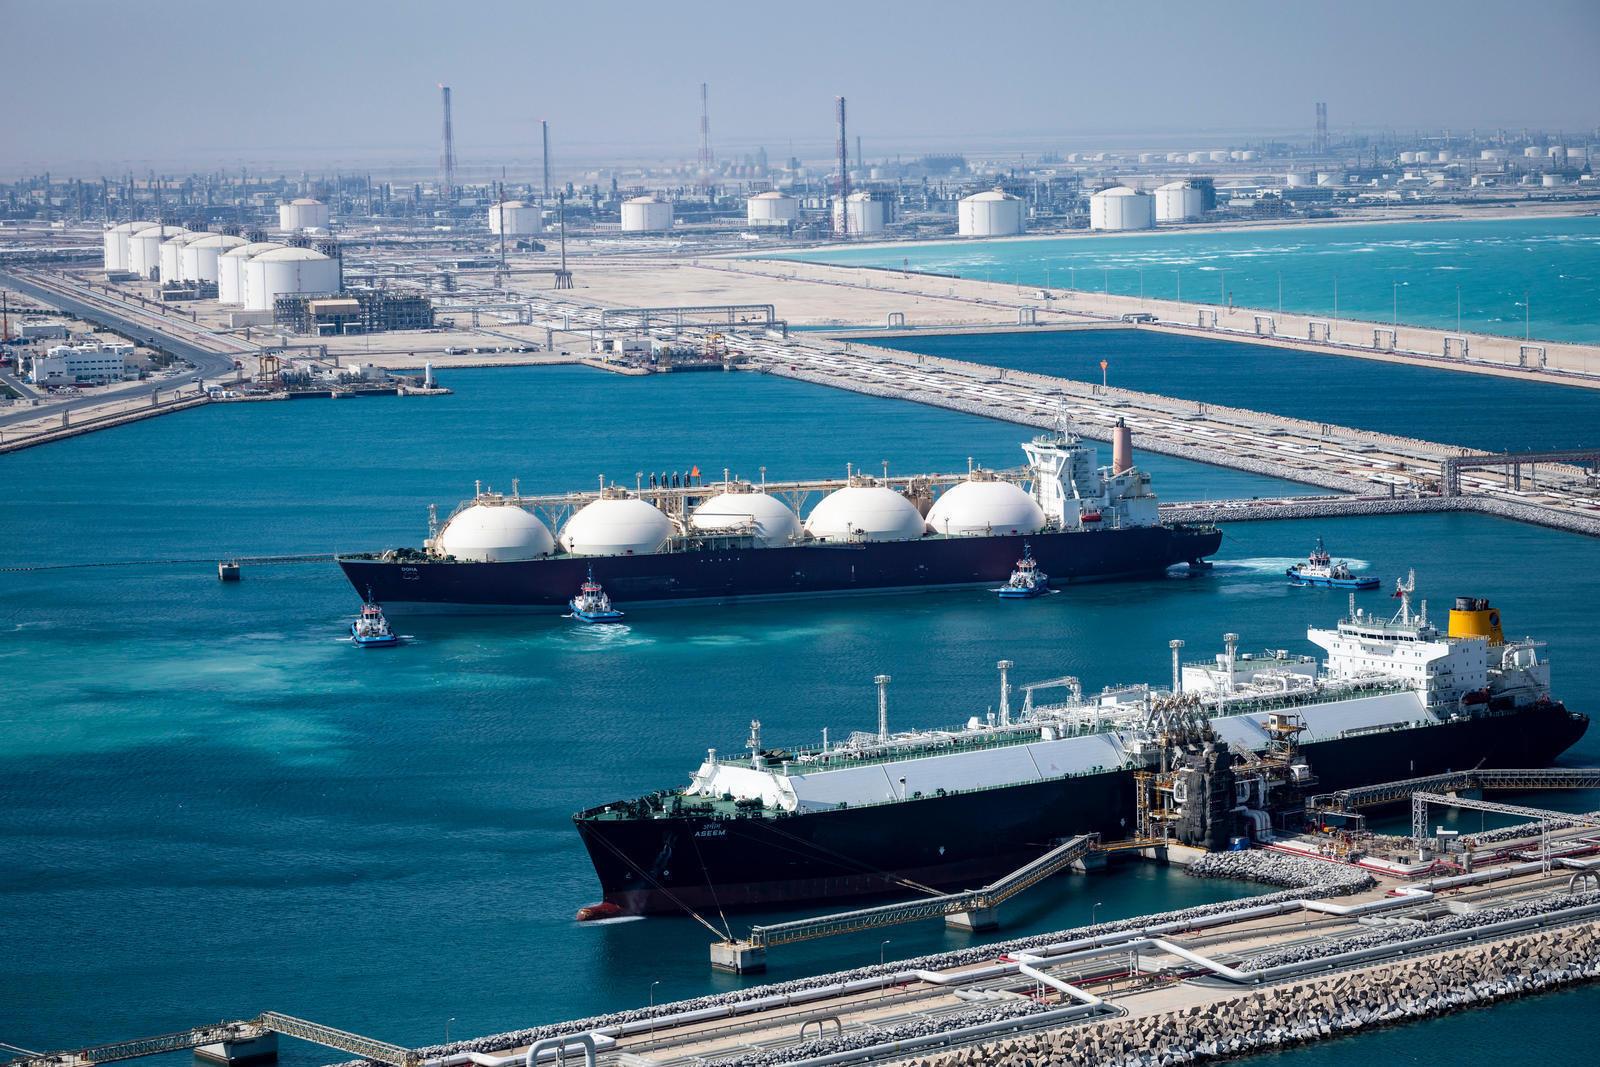 توقيع صفقة مع قطر إنرجي لزيادة إنتاج الغاز الطبيعي المسال